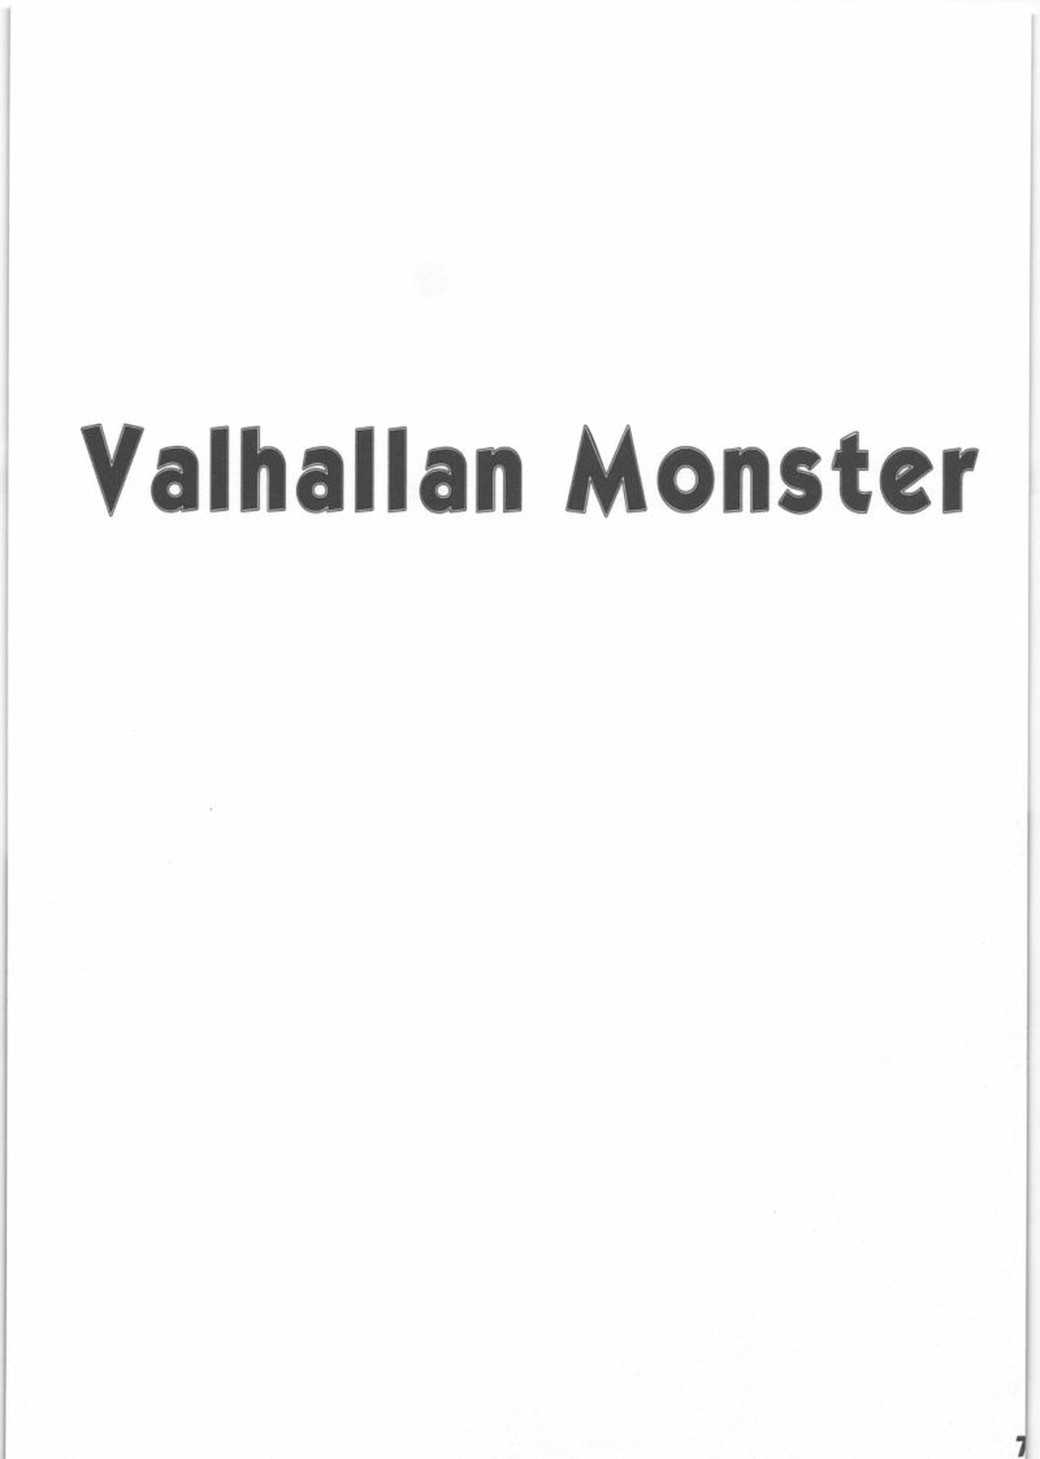 [SagaSaga] Valhallan Monster (Romancing SaGa) [サガサガ] Valhallan Monster (ロマサガ)